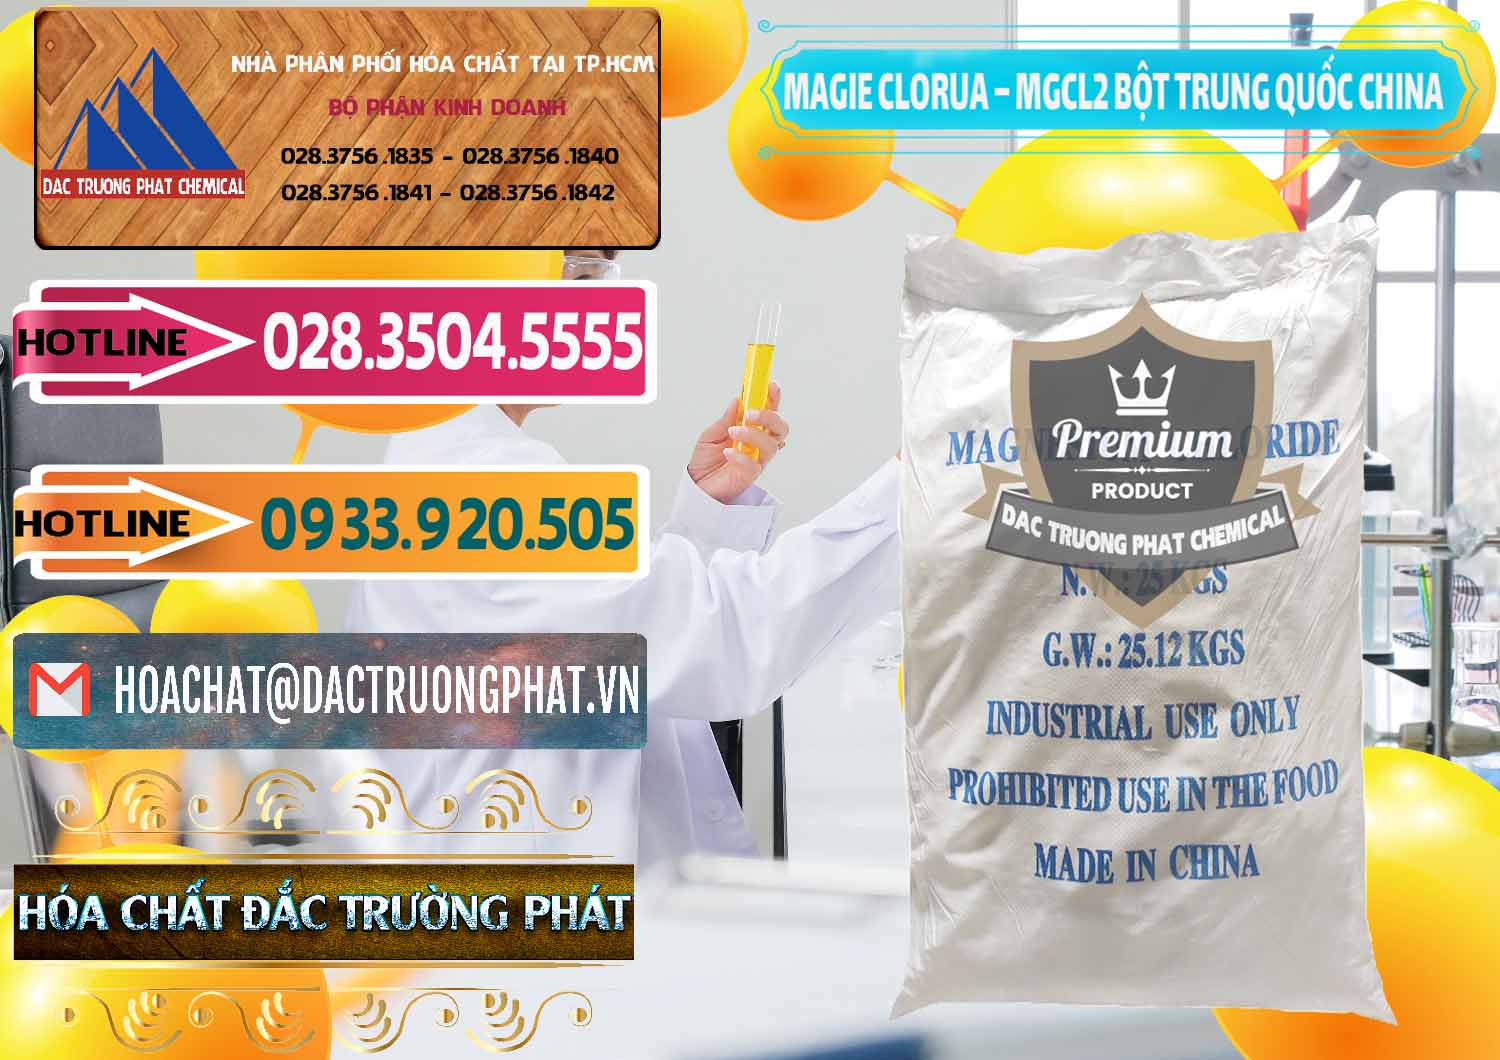 Công ty chuyên nhập khẩu và bán Magie Clorua – MGCL2 96% Dạng Bột Bao Chữ Xanh Trung Quốc China - 0207 - Công ty bán ( cung cấp ) hóa chất tại TP.HCM - dactruongphat.vn